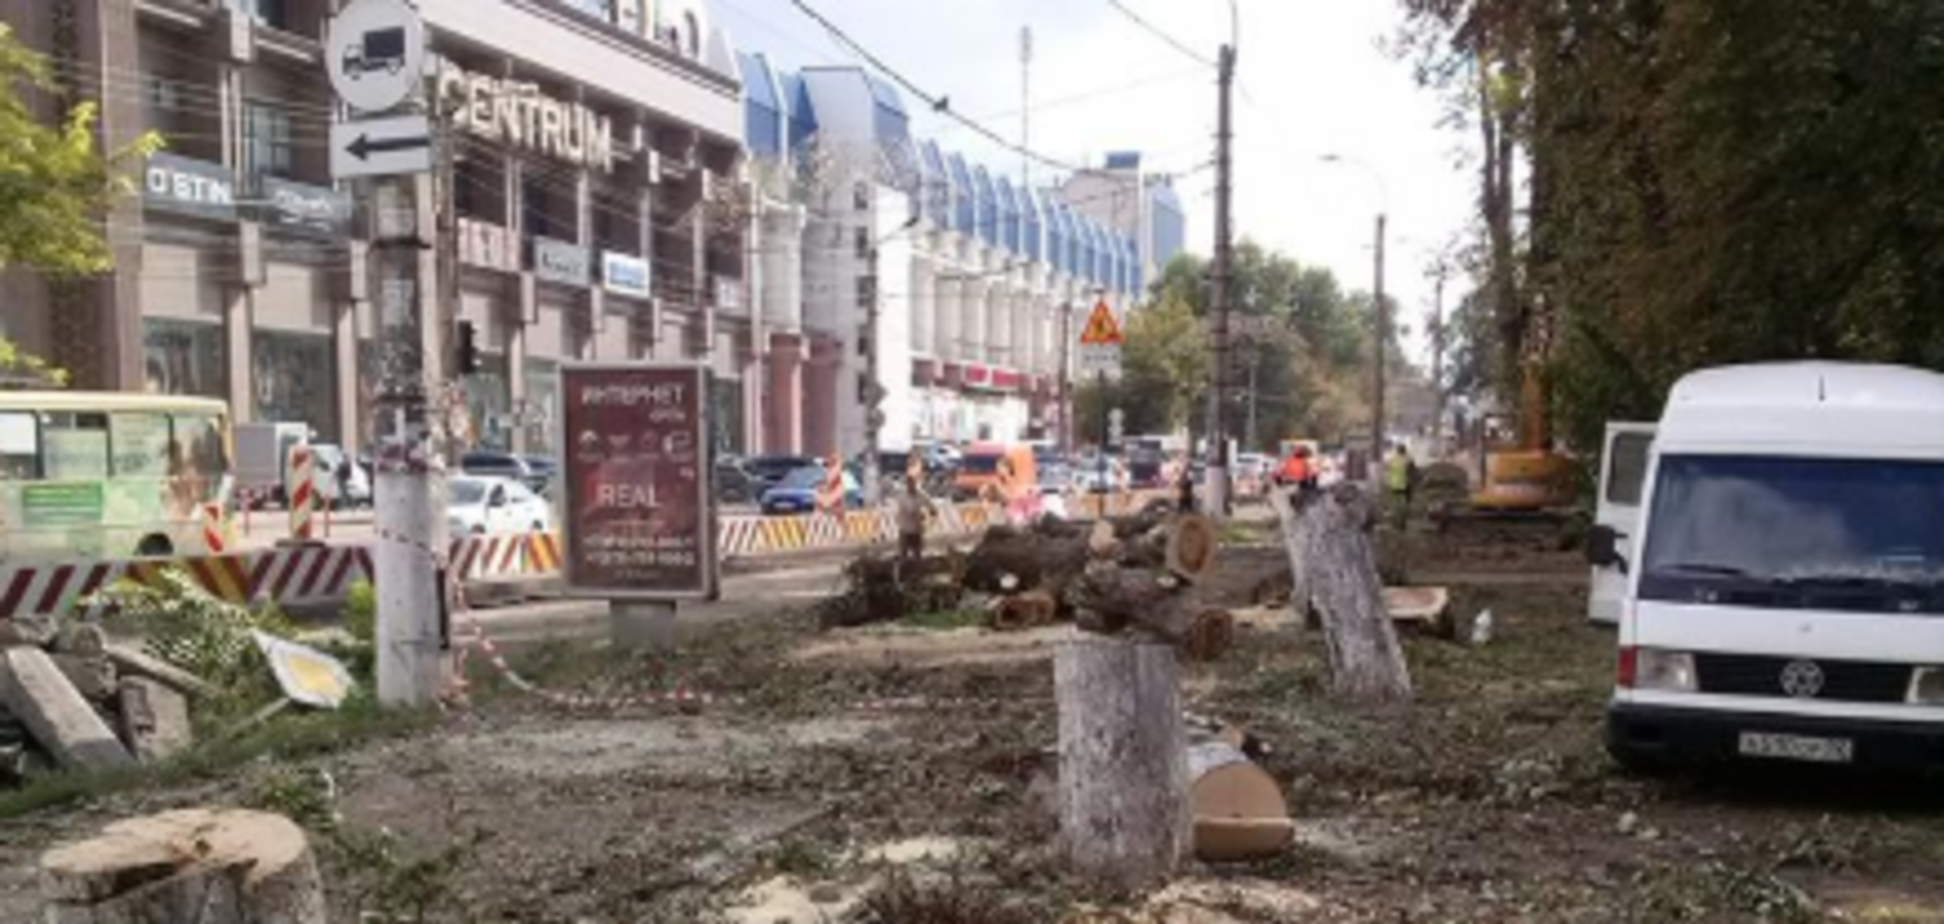 ''Після них - хоч потоп'': окупанти обурили мережу ''лісоповалом'' у Криму